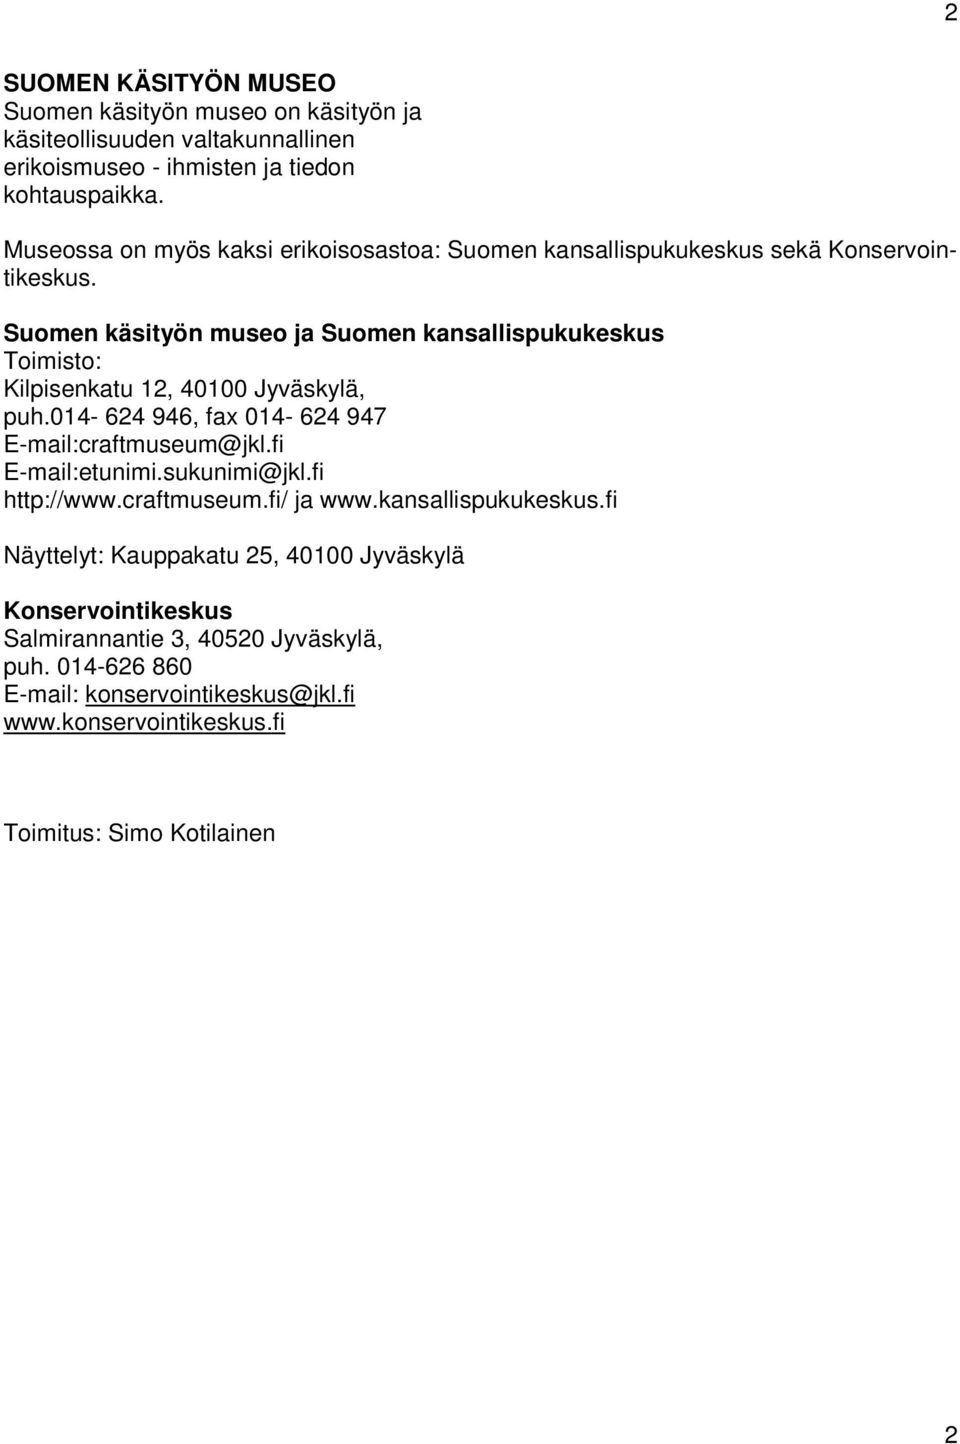 Suomen käsityön museo ja Suomen kansallispukukeskus Toimisto: Kilpisenkatu 12, 40100 Jyväskylä, puh.014-624 946, fax 014-624 947 E-mail:craftmuseum@jkl.fi E-mail:etunimi.